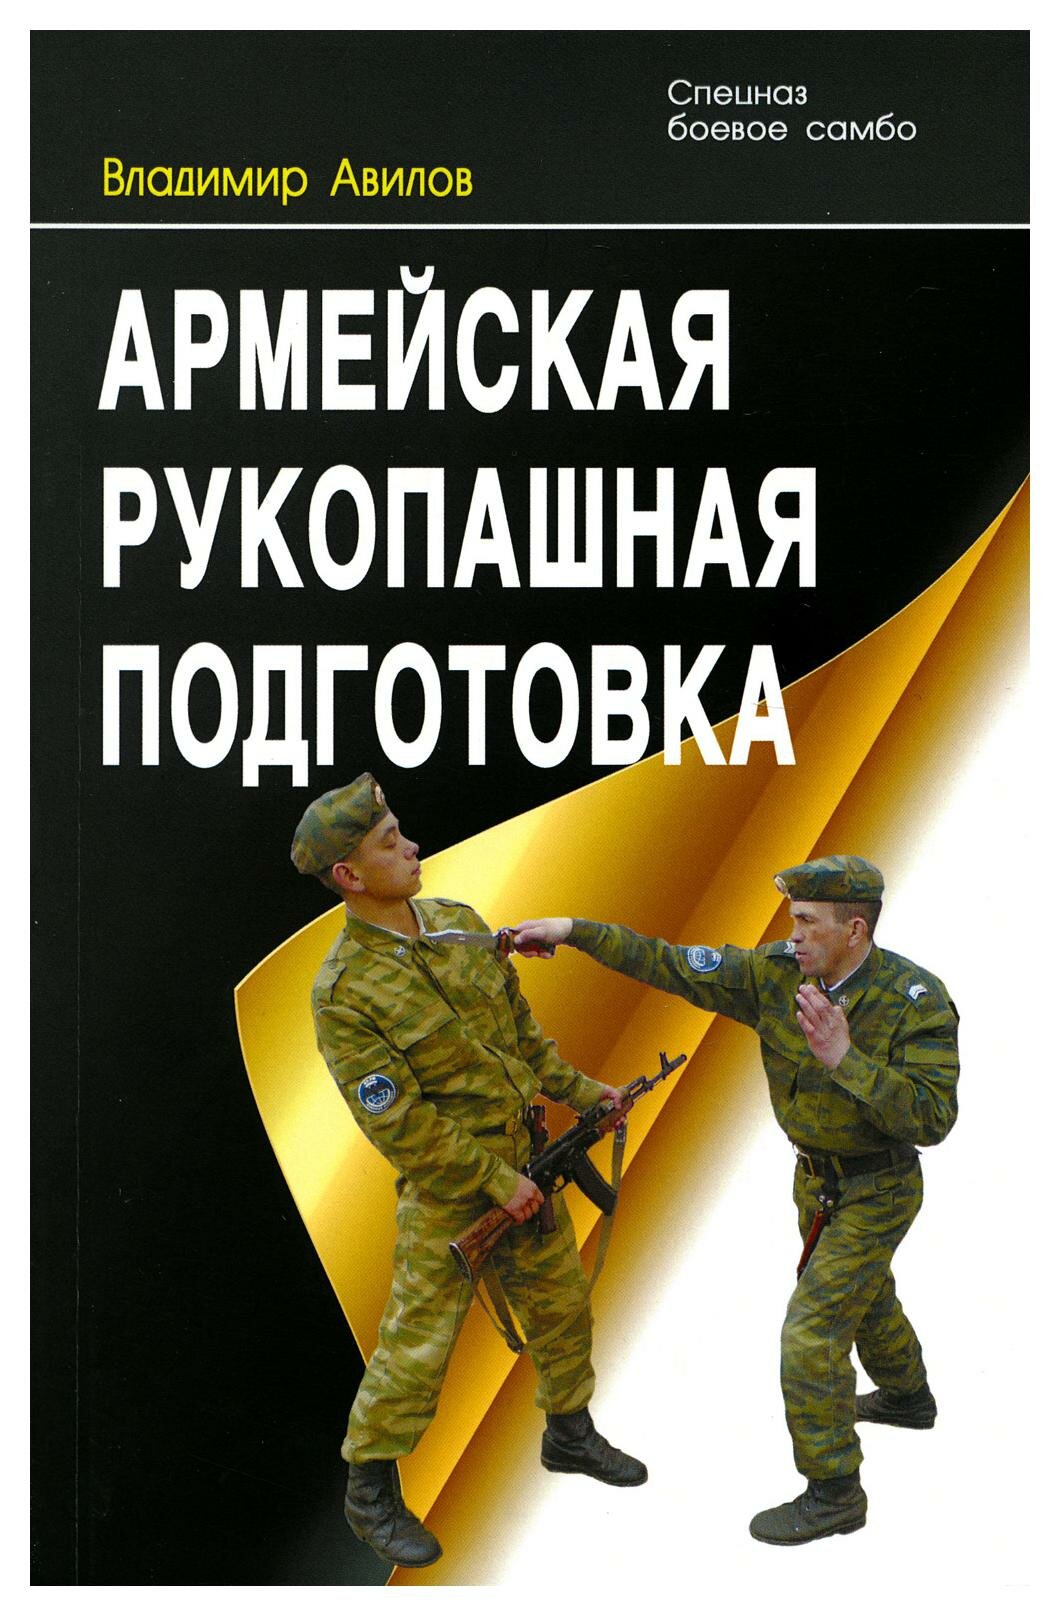 Армейская рукопашная подготовка Книга Авилов ВИ 16+